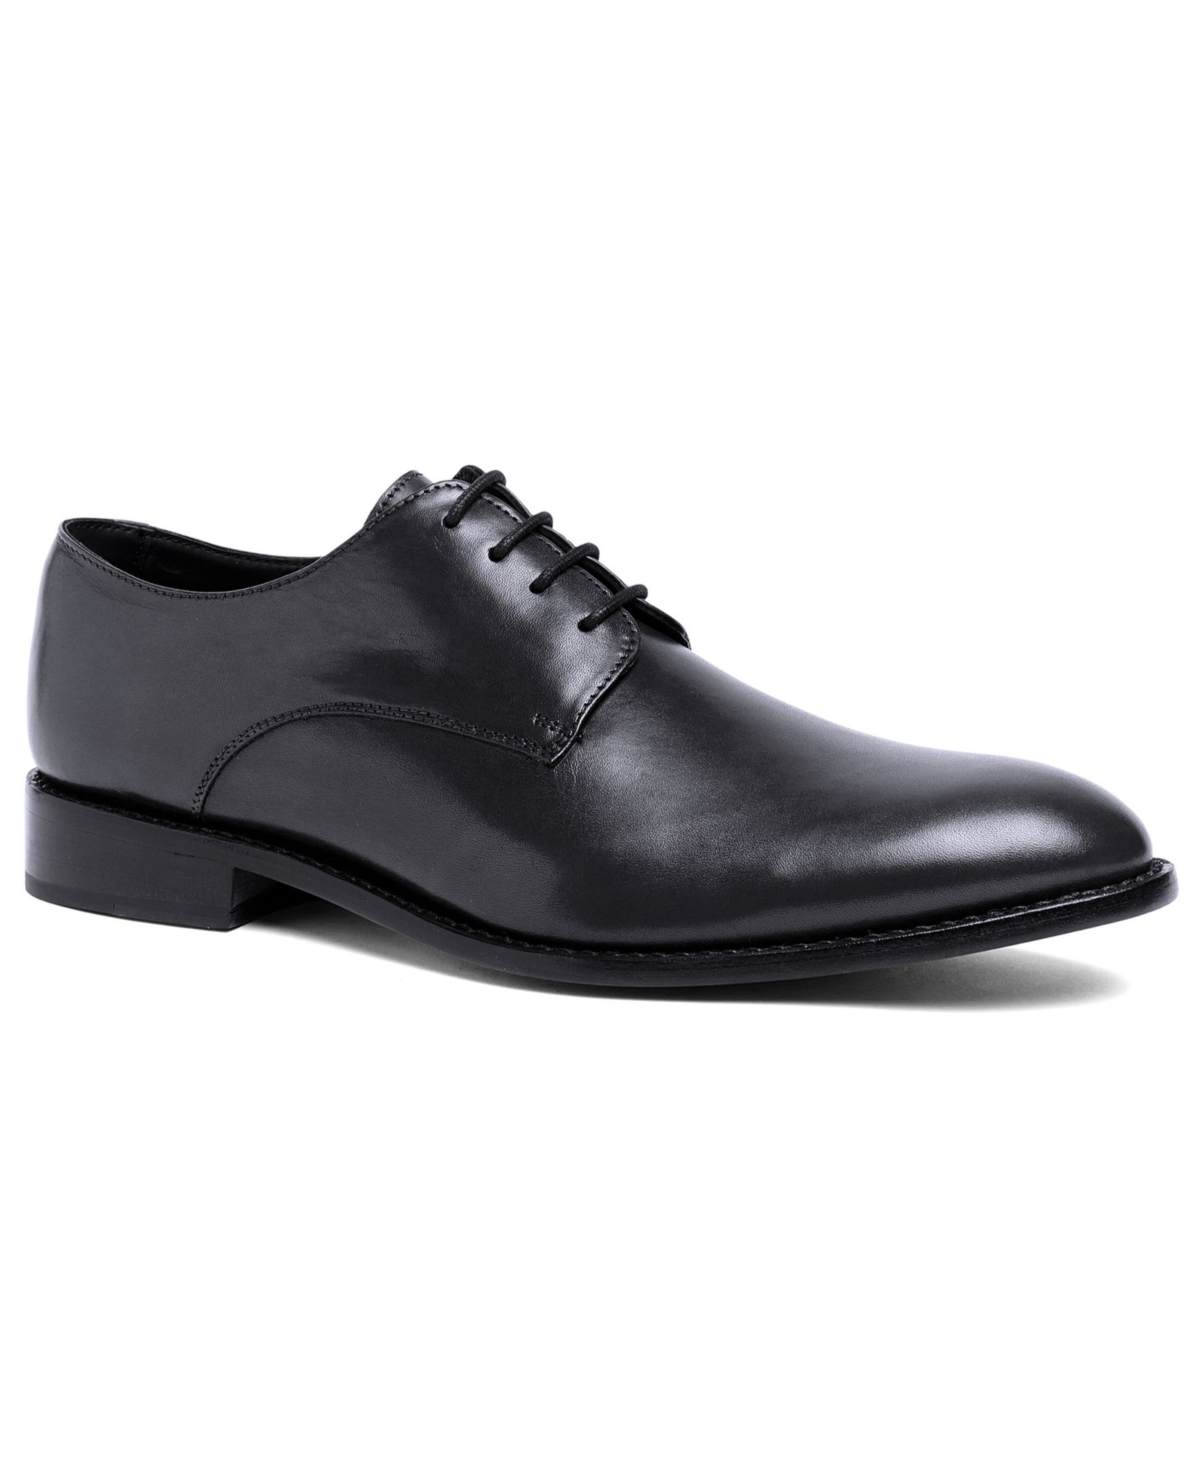 Men's Truman Derby Lace-Up Leather Dress Shoes - Black